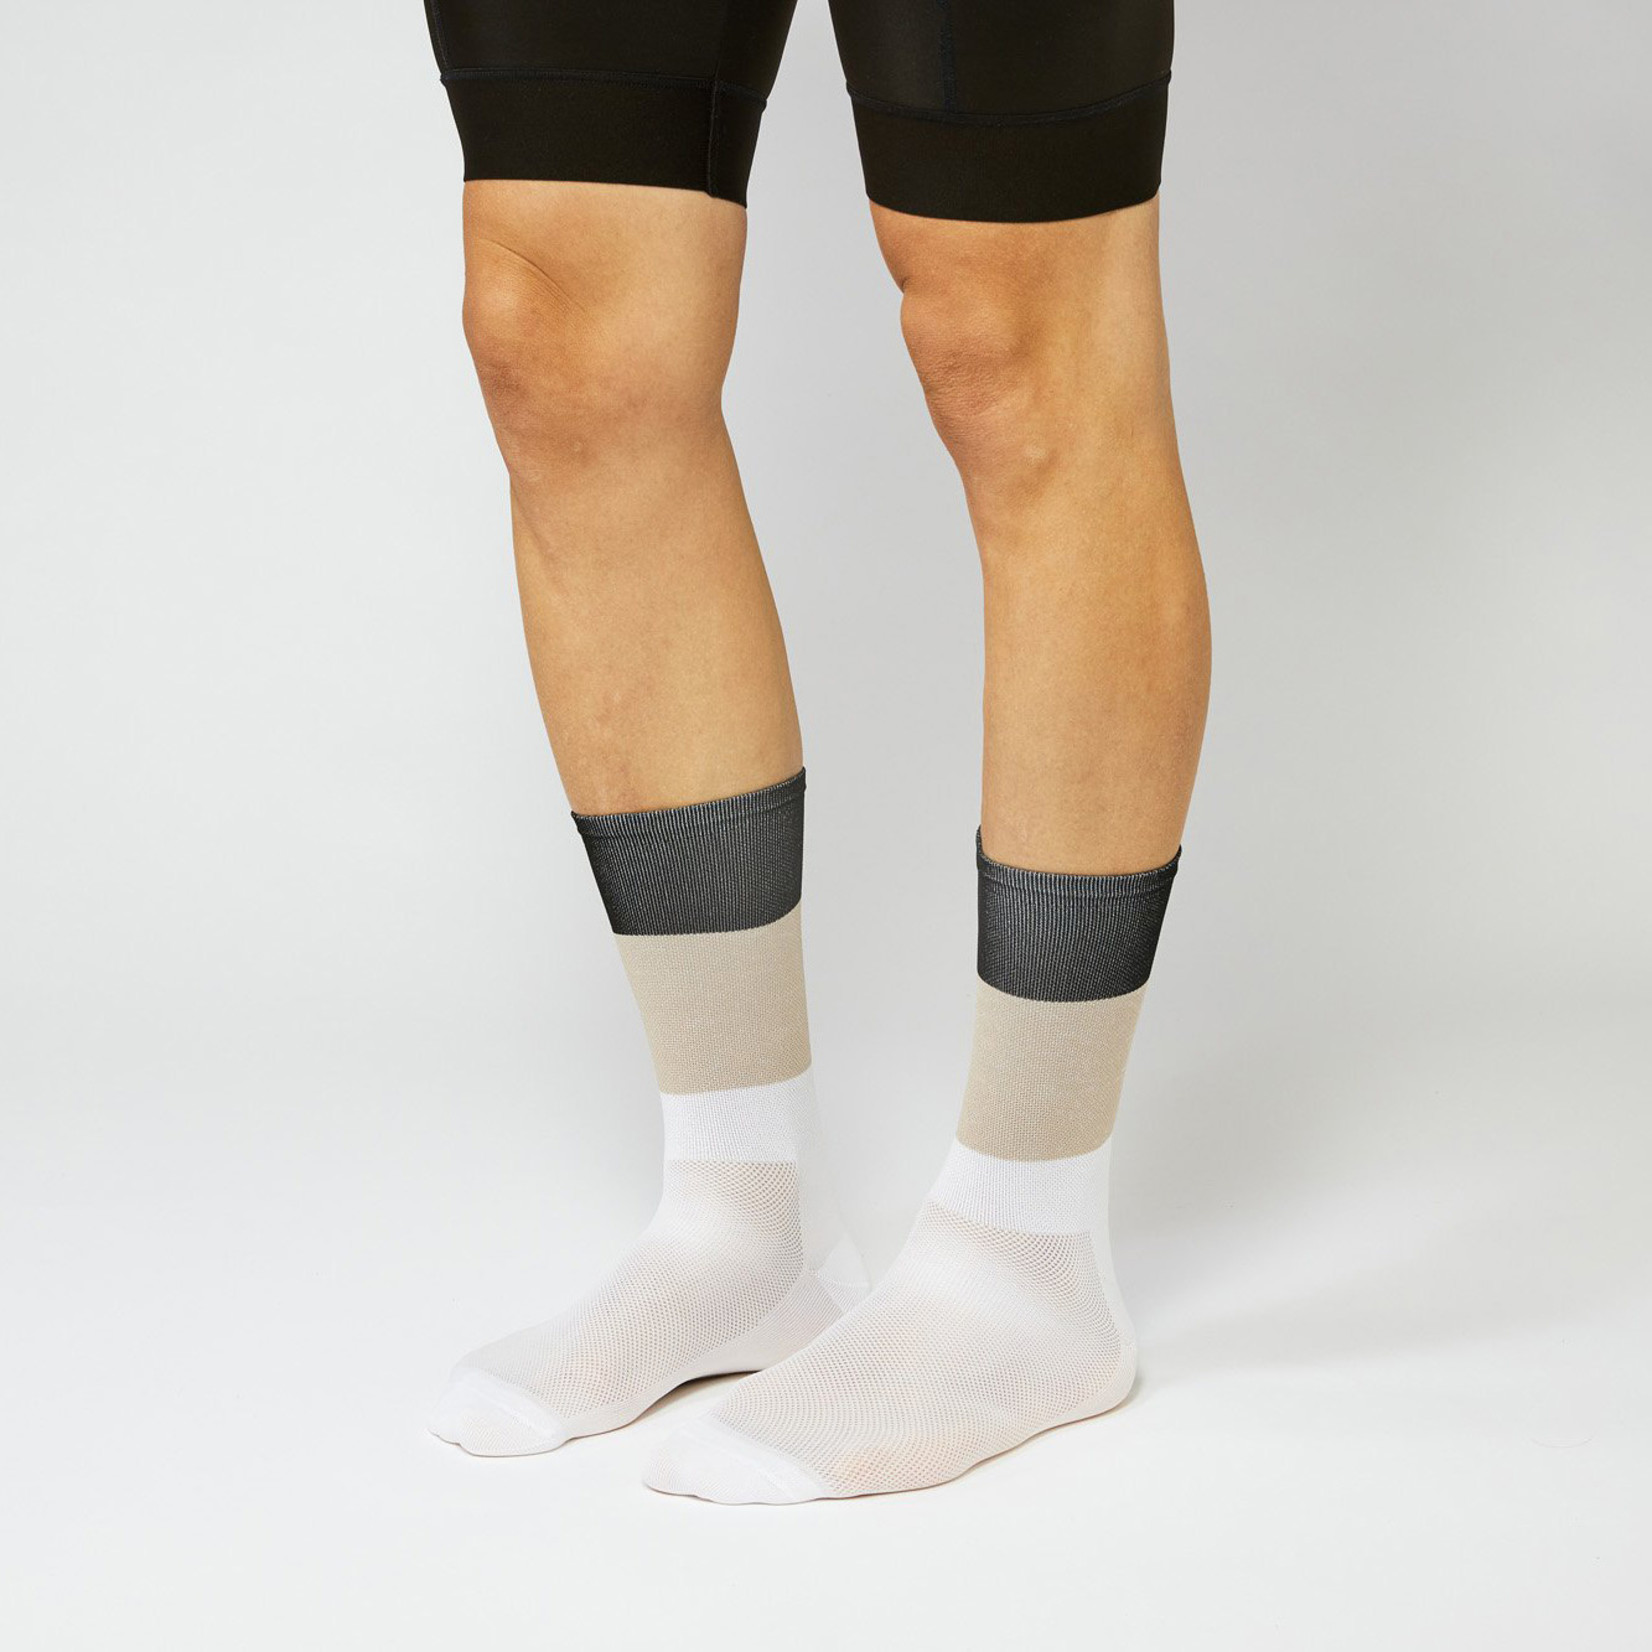 Fingerscrossed FINGERSCROSSED Socks - Blocks Black Sand White